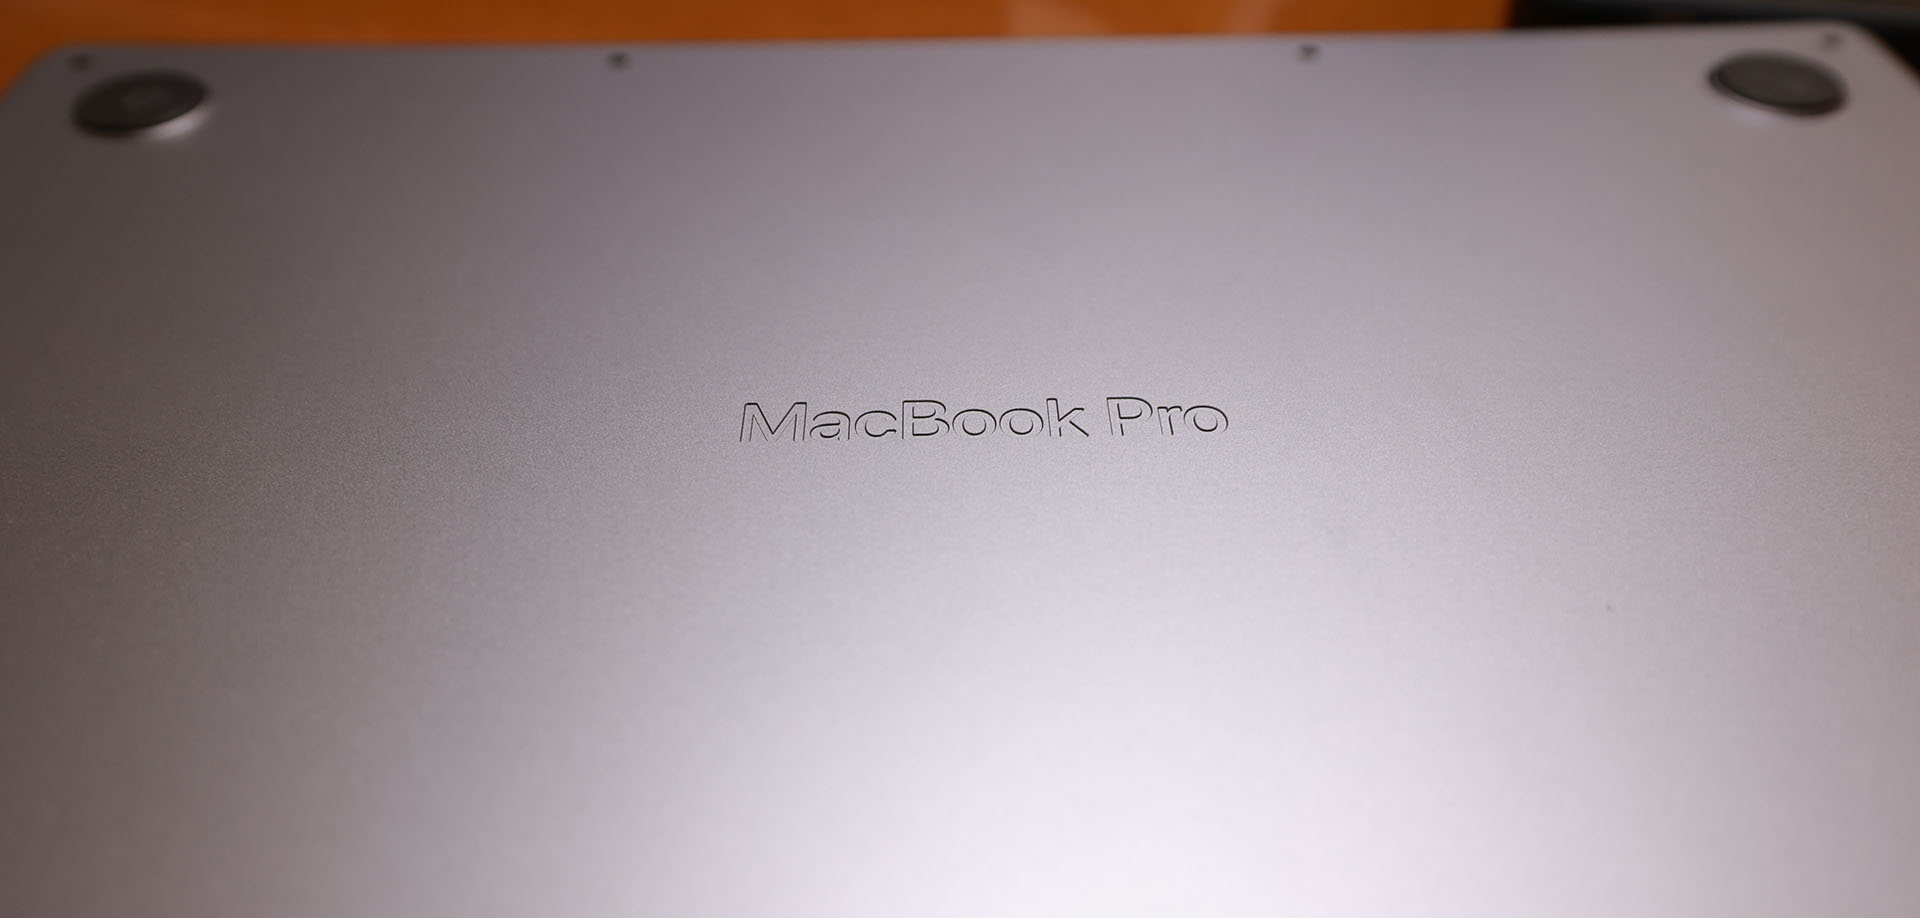 本体裏側にMacBook Proの刻印